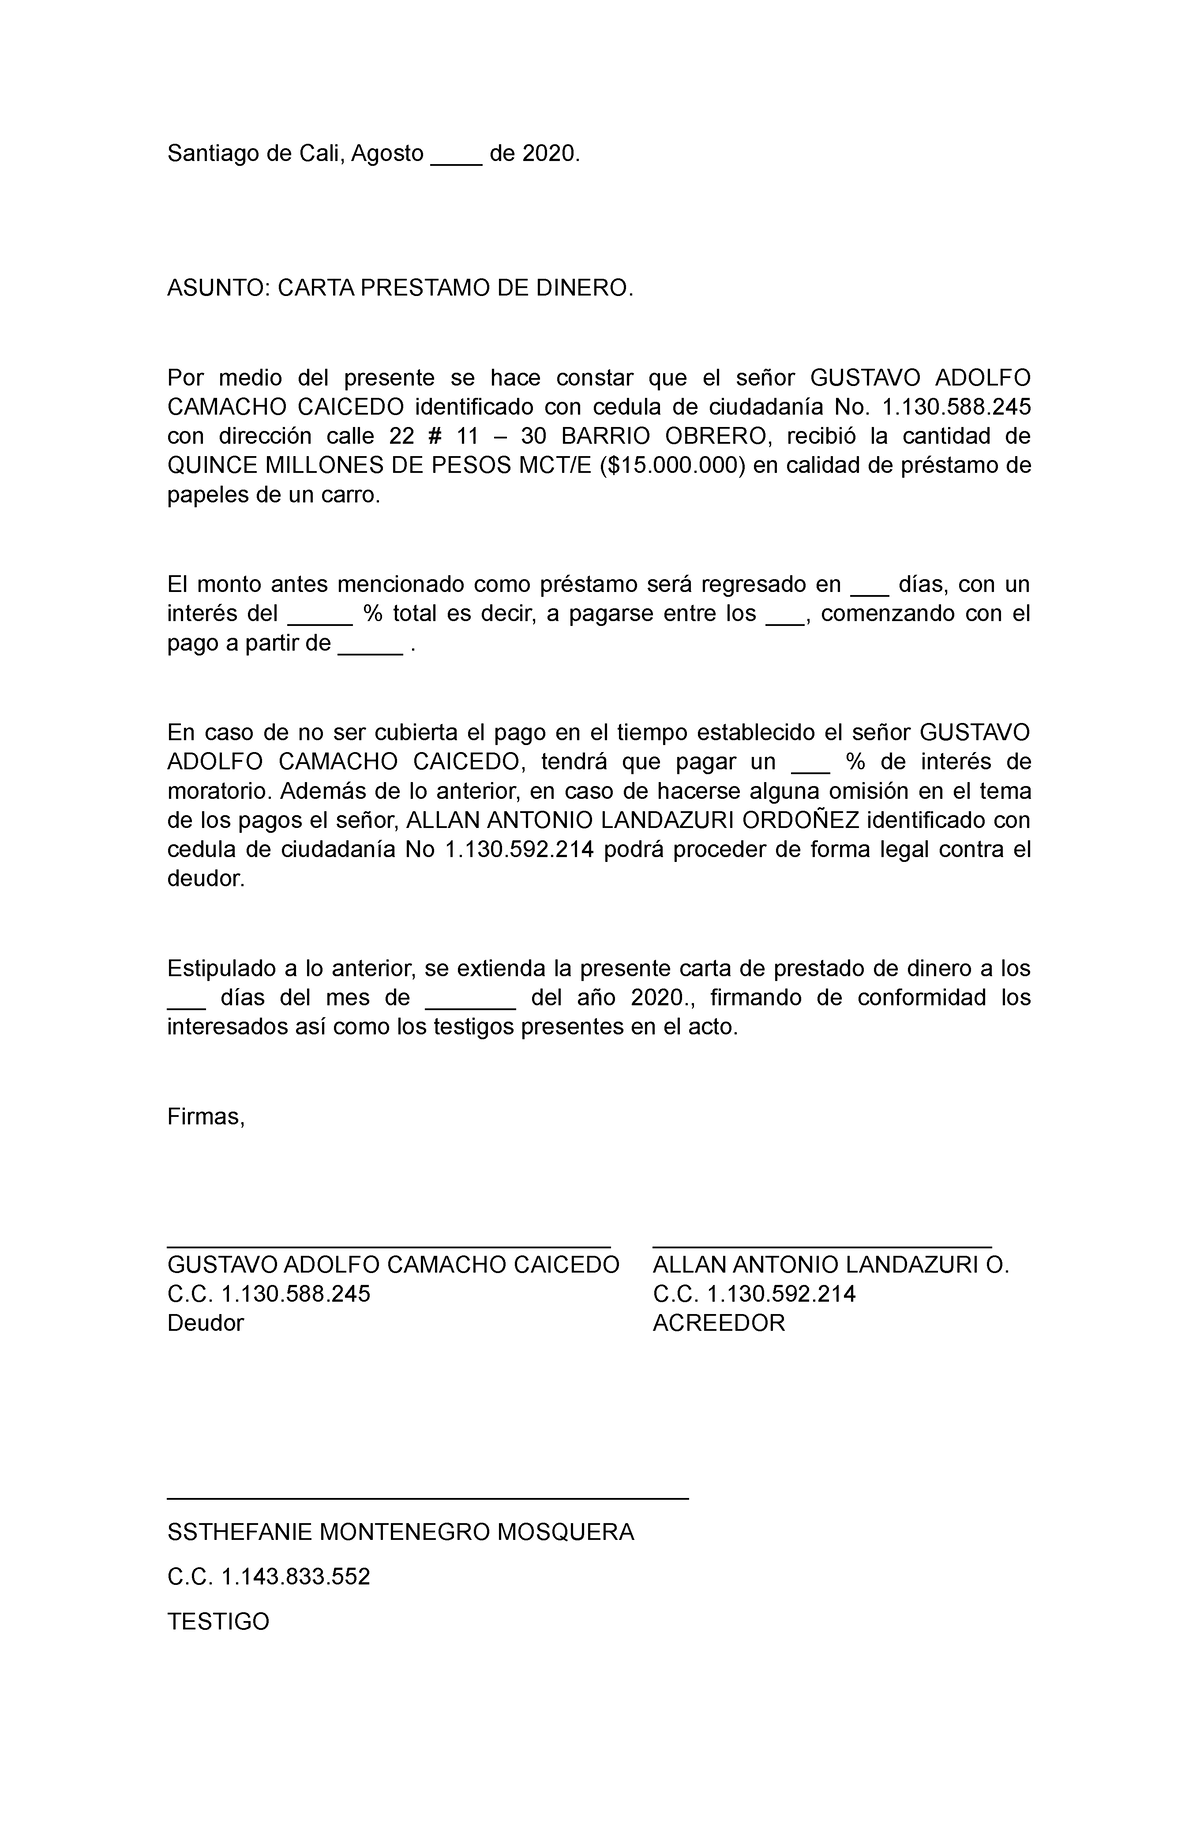 Carta Prestamo DE Dinero - Santiago de Cali, Agosto ____ de 2020. ASUNTO: CARTA  PRESTAMO DE DINERO. - Studocu